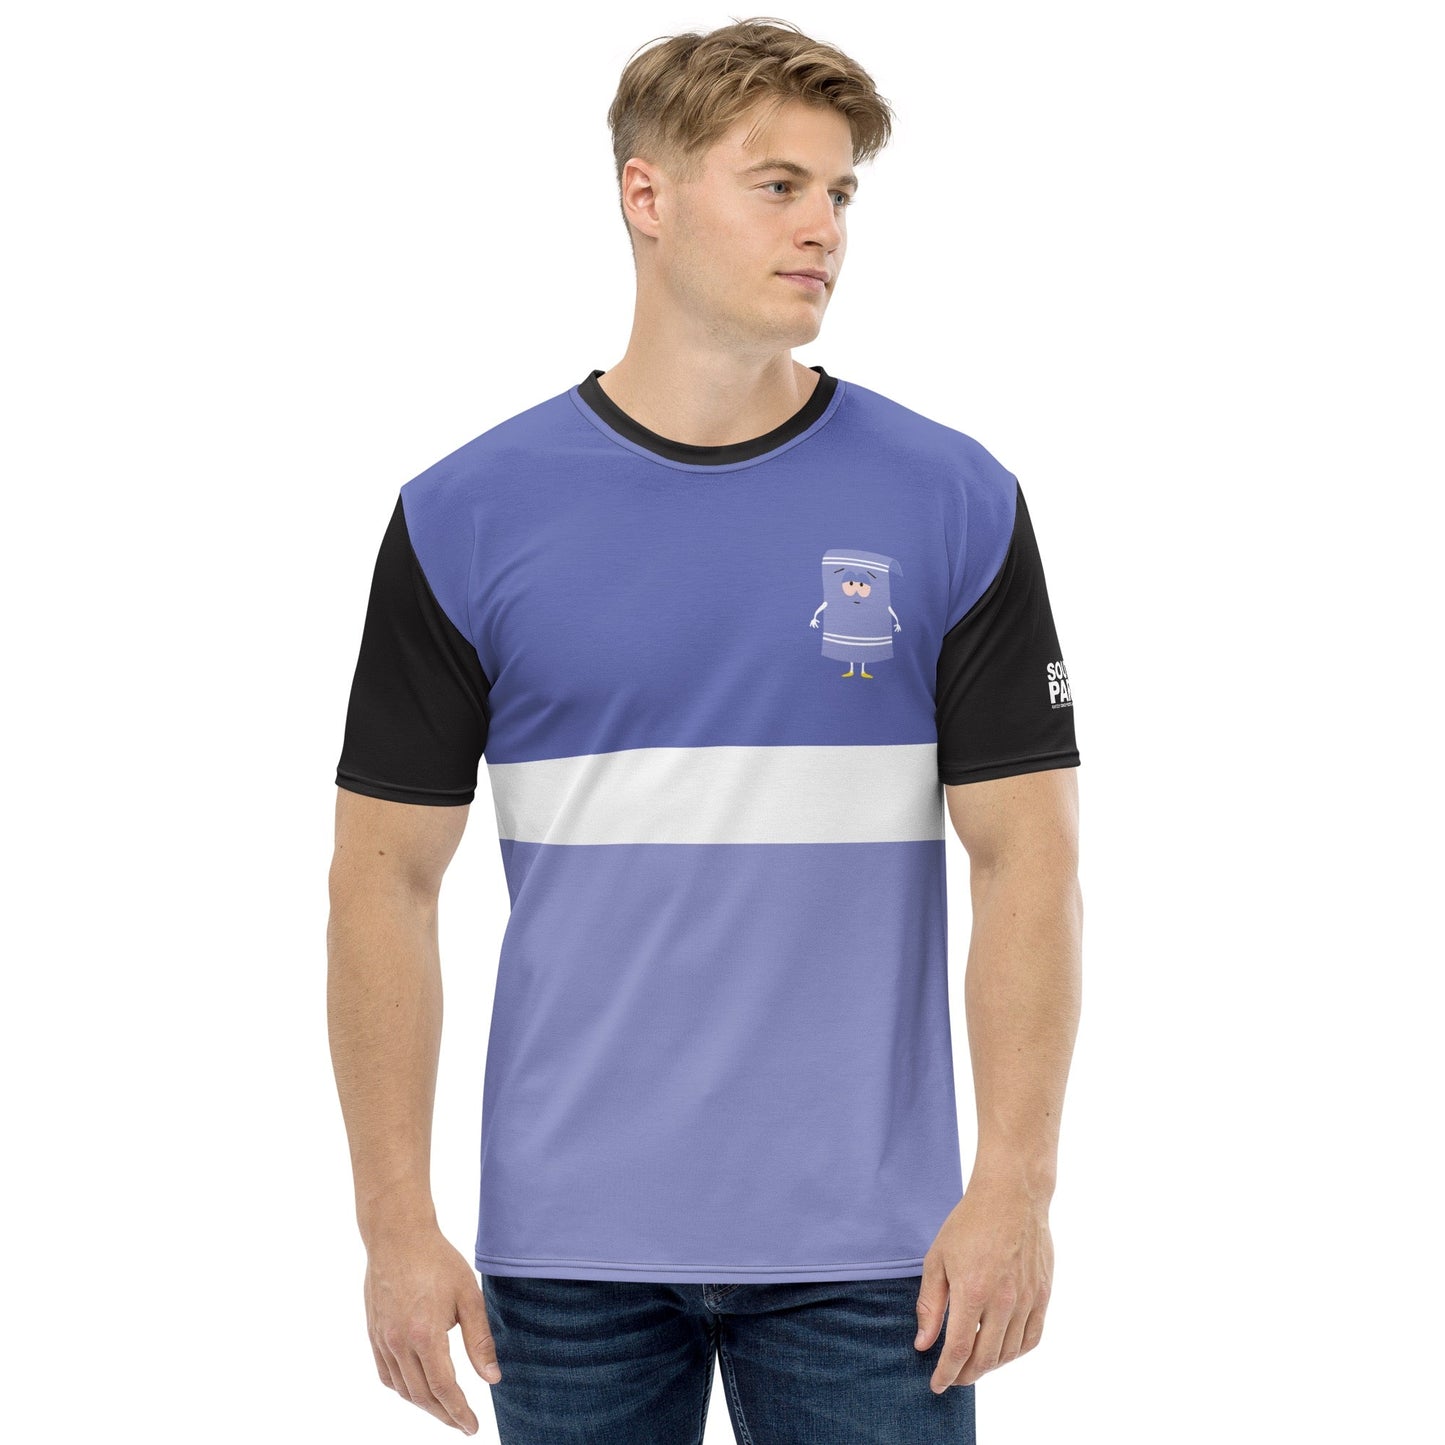 South Park Towelie Color Block Unisex Short Sleeve T - Shirt - Paramount Shop